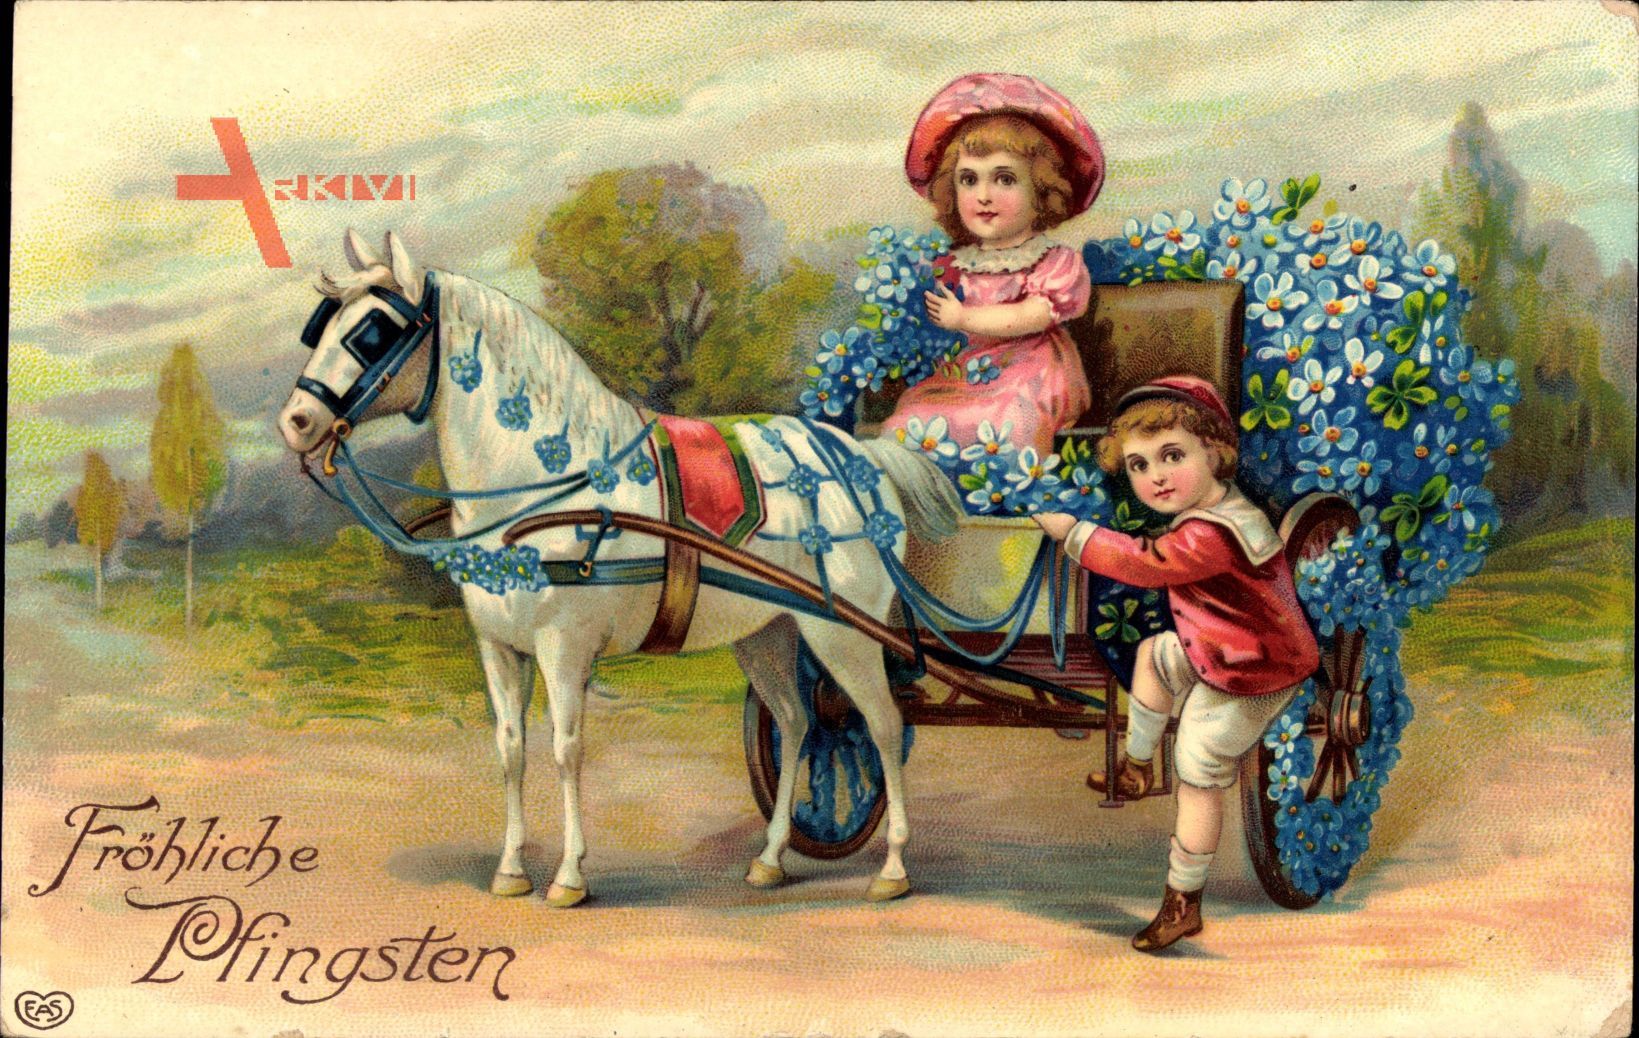 Glückwunsch Pfingsten, Mit Blumen geschmückte Kutsche, Kinder